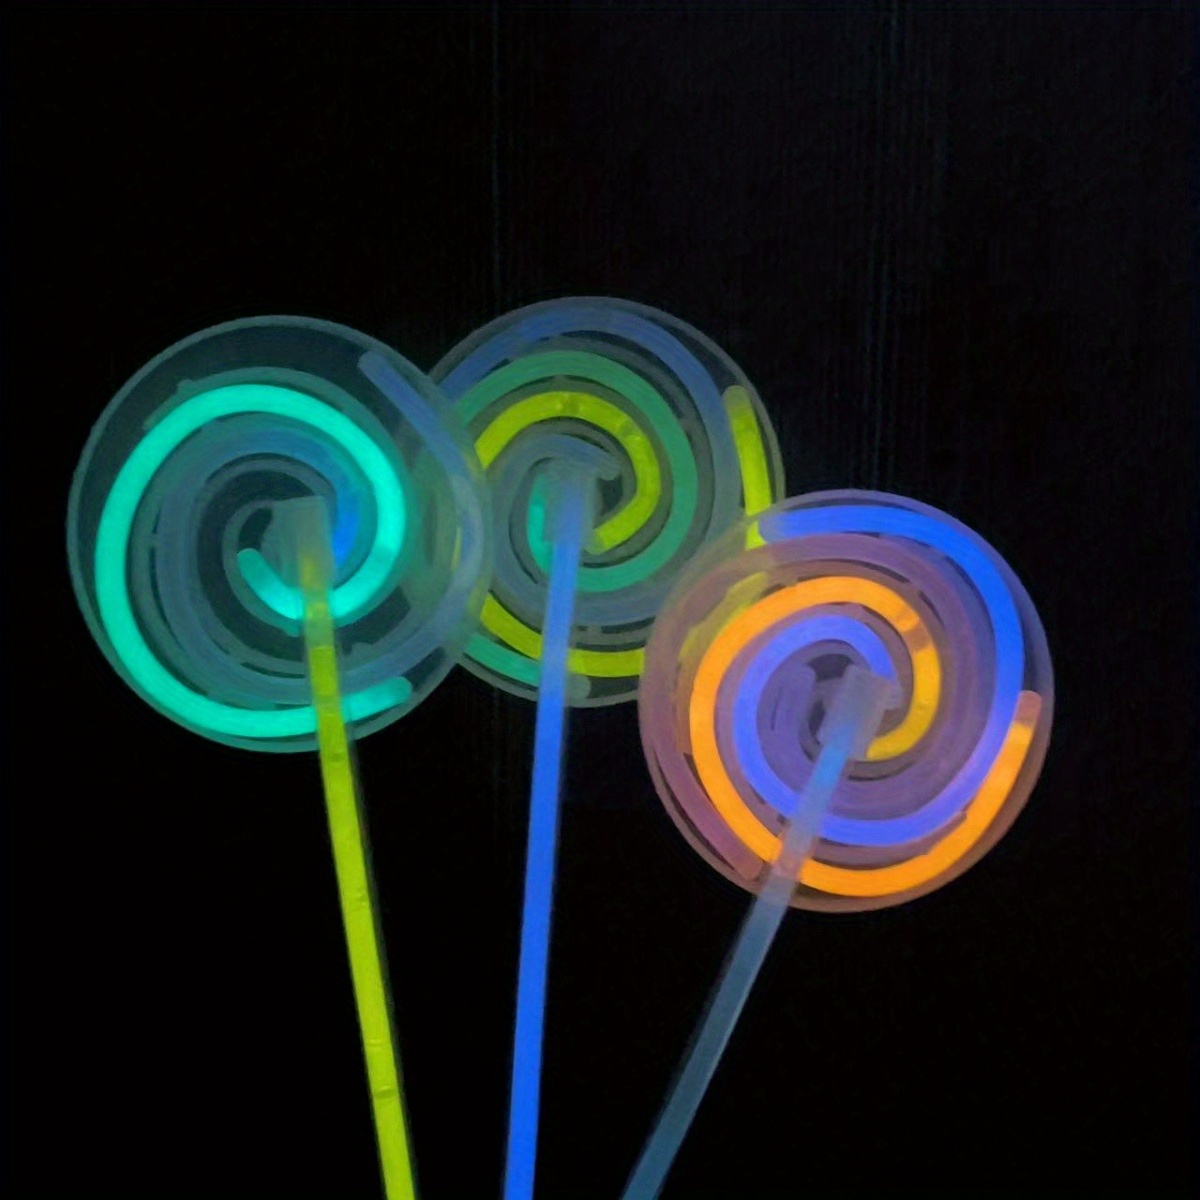 14 Stück Glasfaser-leuchtstäbe, Led-leuchtstäbe Mit 3 Blinkenden Modellen  Für Kinder, Geburtstagsparty-geschenke, 90 Tage Käuferschutz